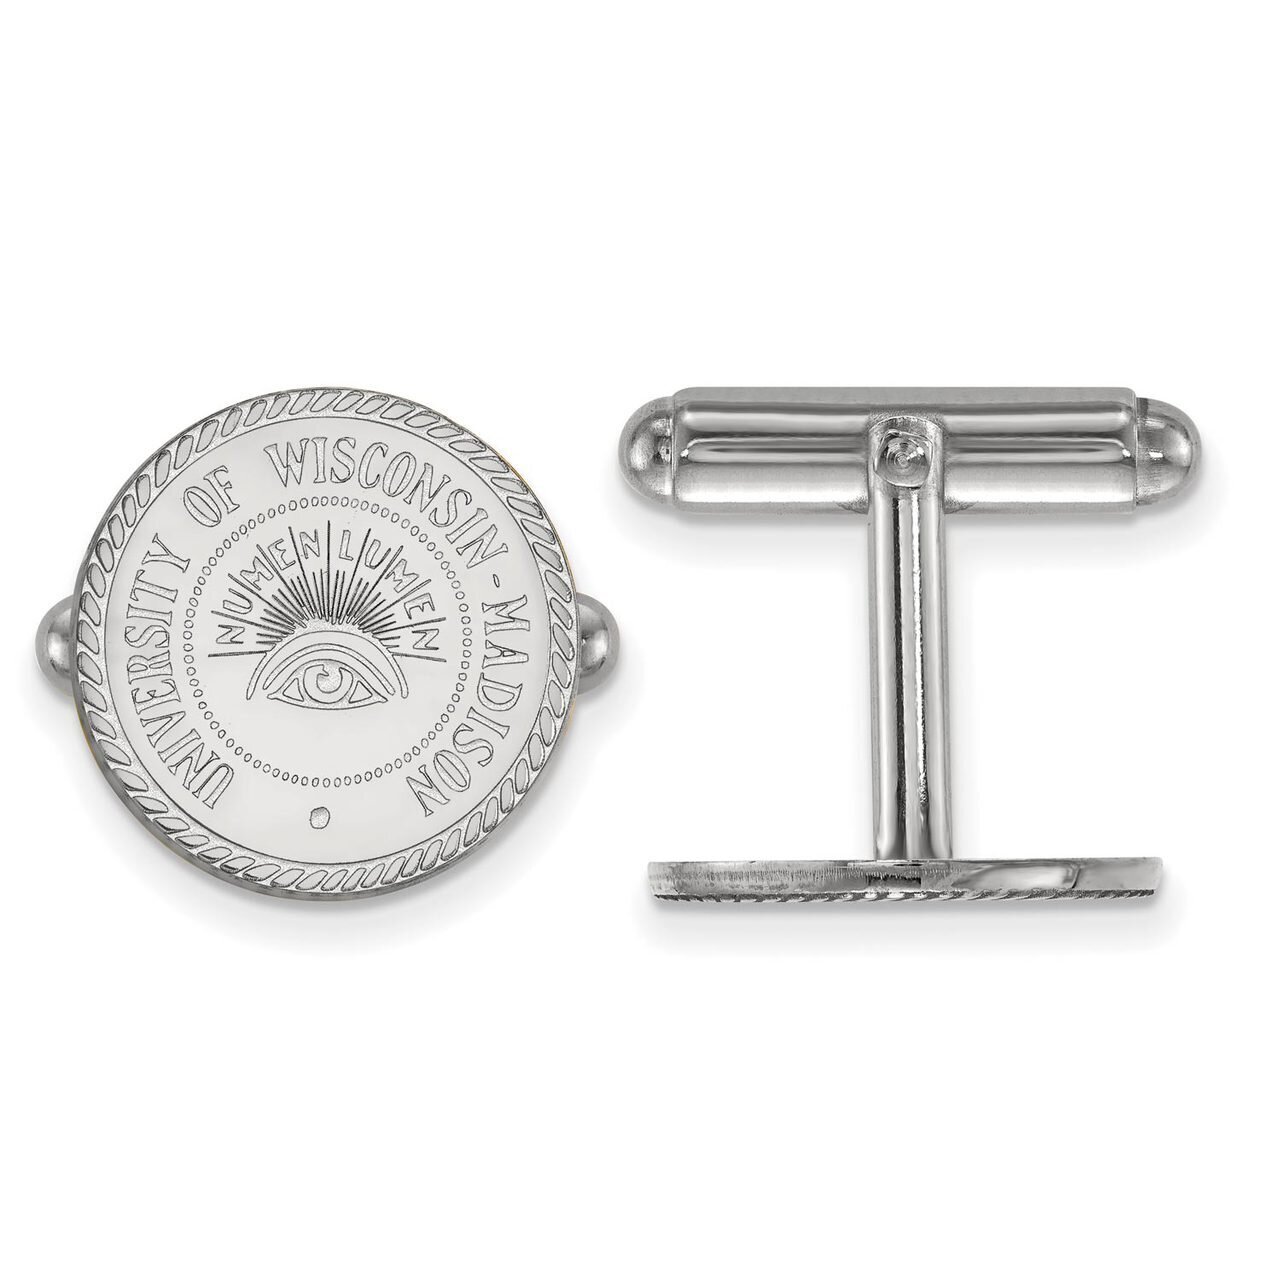 University of Wisconsin Crest Cufflinks Sterling Silver SS082UWI